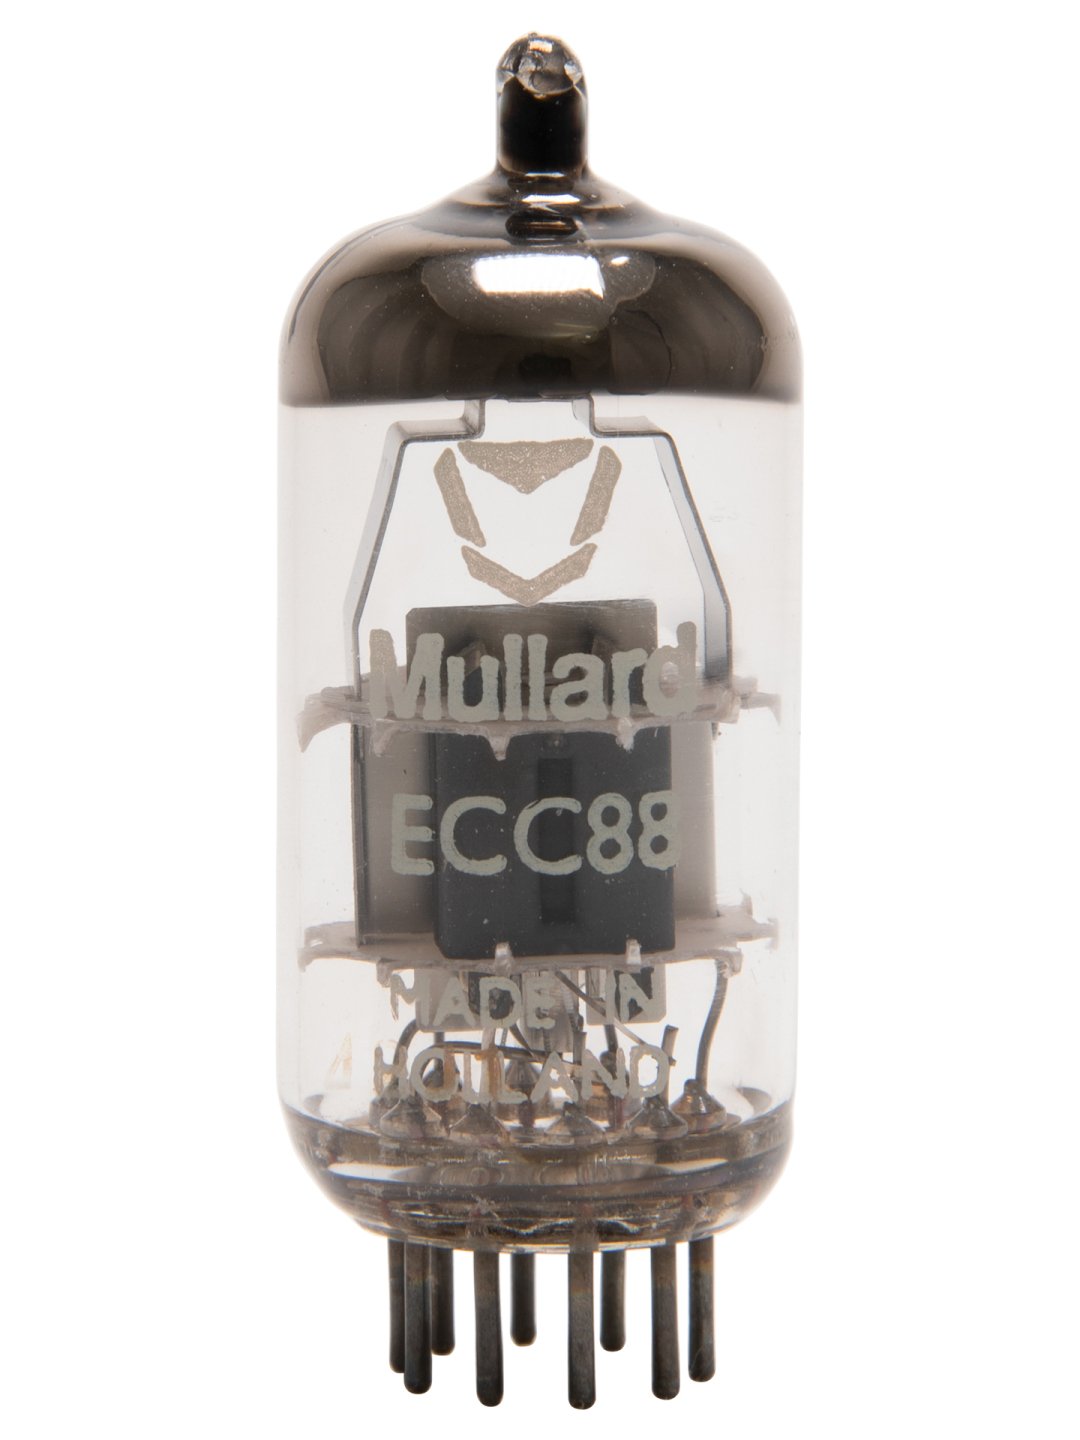 Mullard ECC88 (6DJ8/6922)